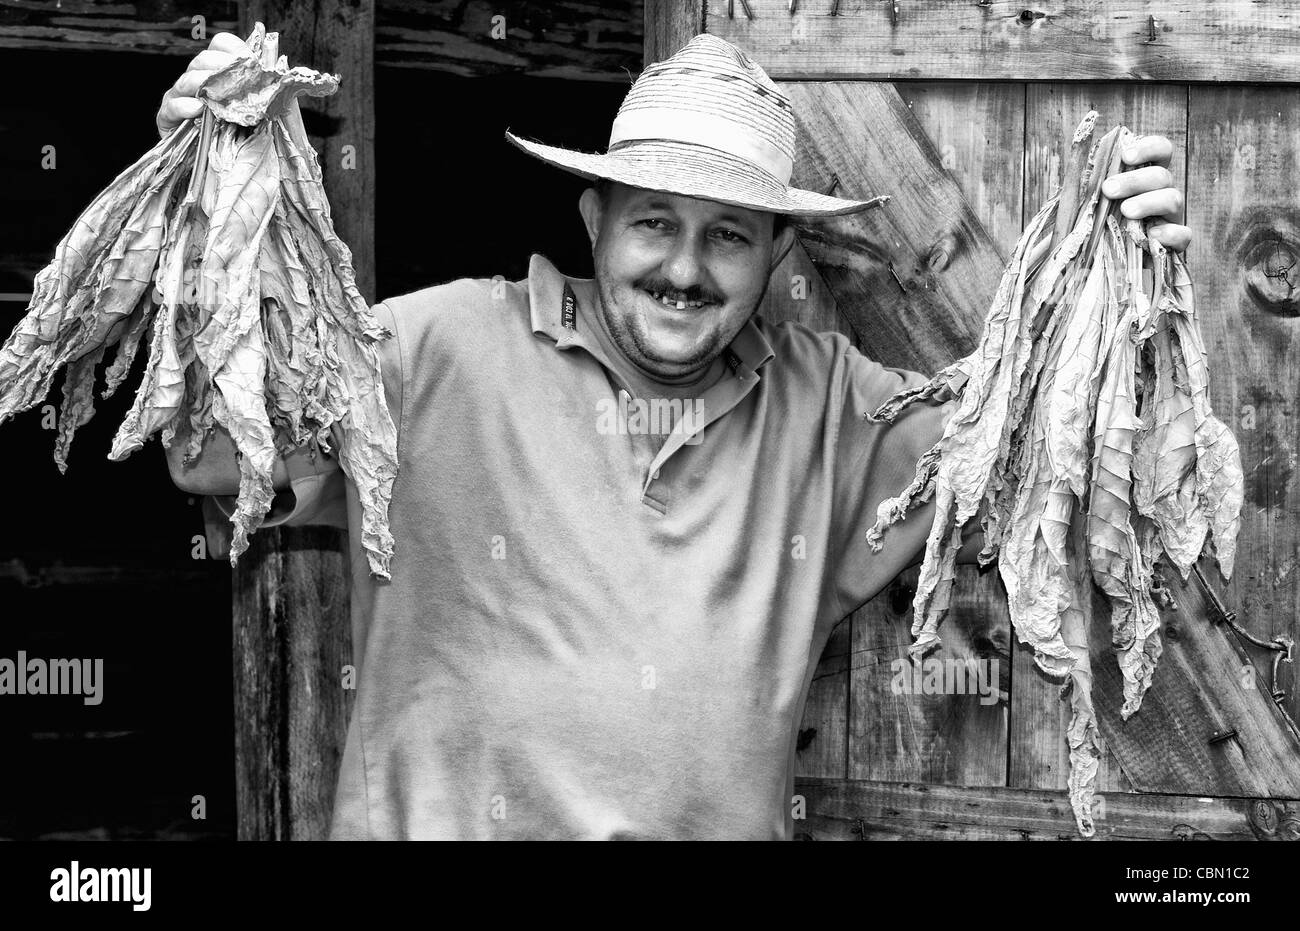 Farmer near barn to dry tobacco in tobacco fields in primative methods in Sierra del Rosario Cuba Stock Photo